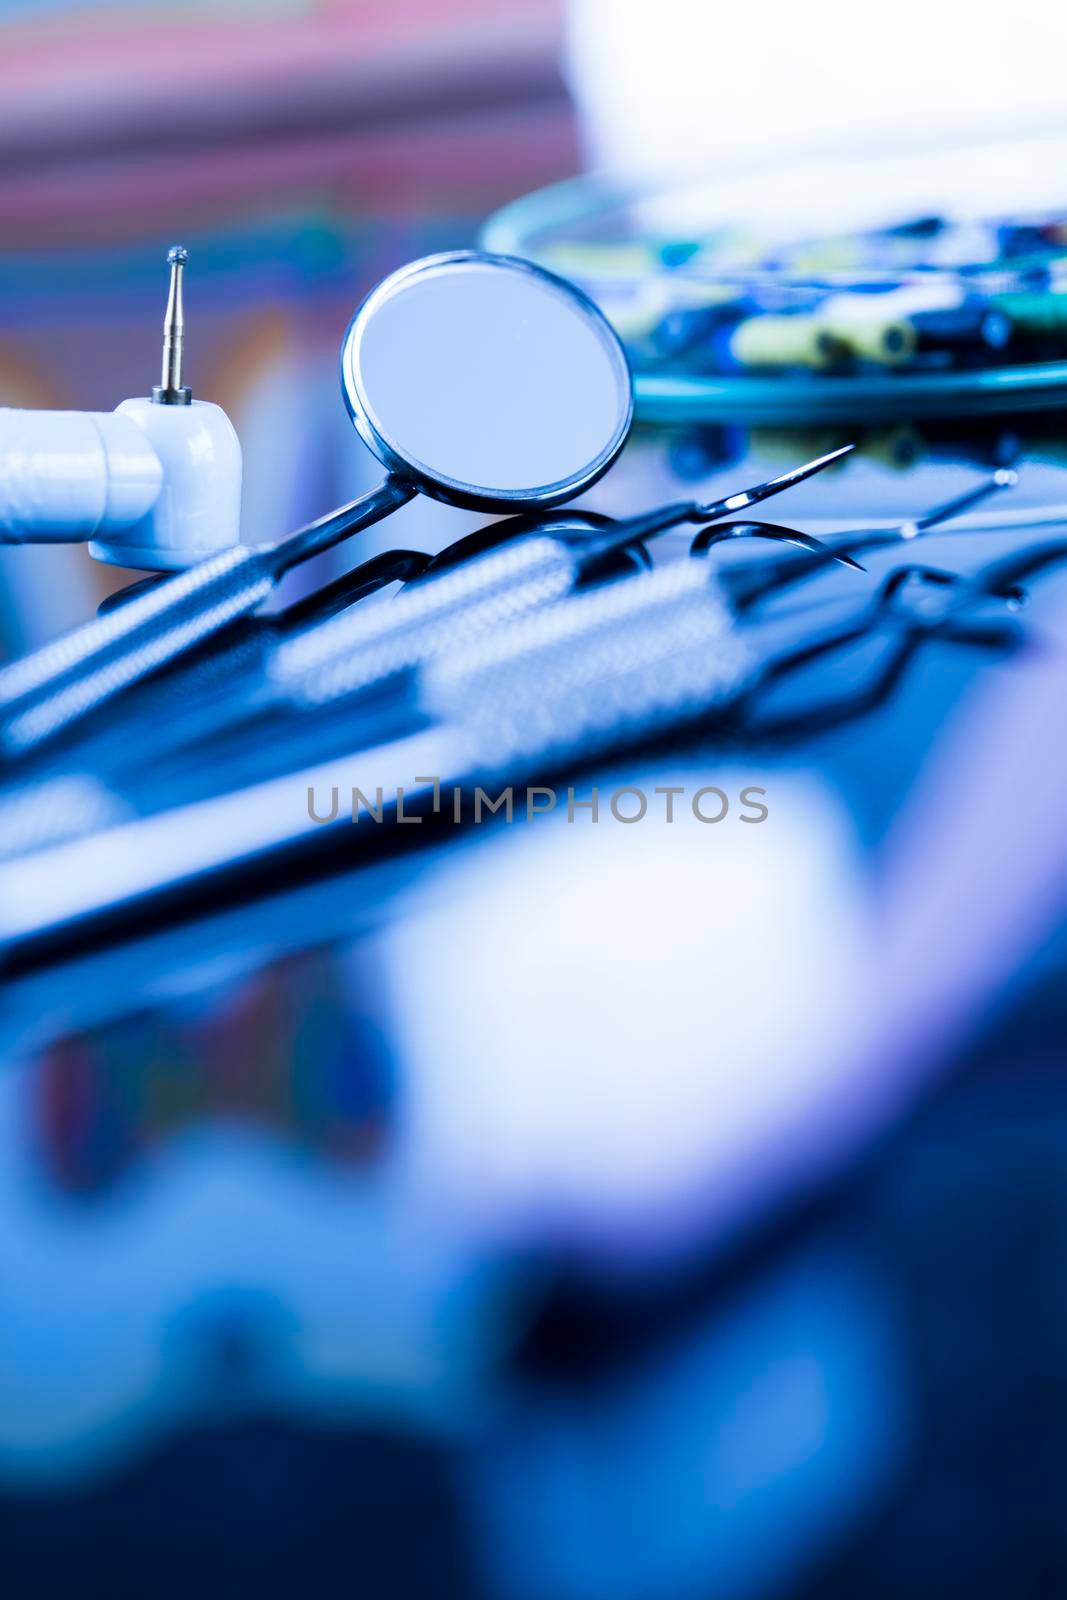 Health,Stomatology equipment for dental care